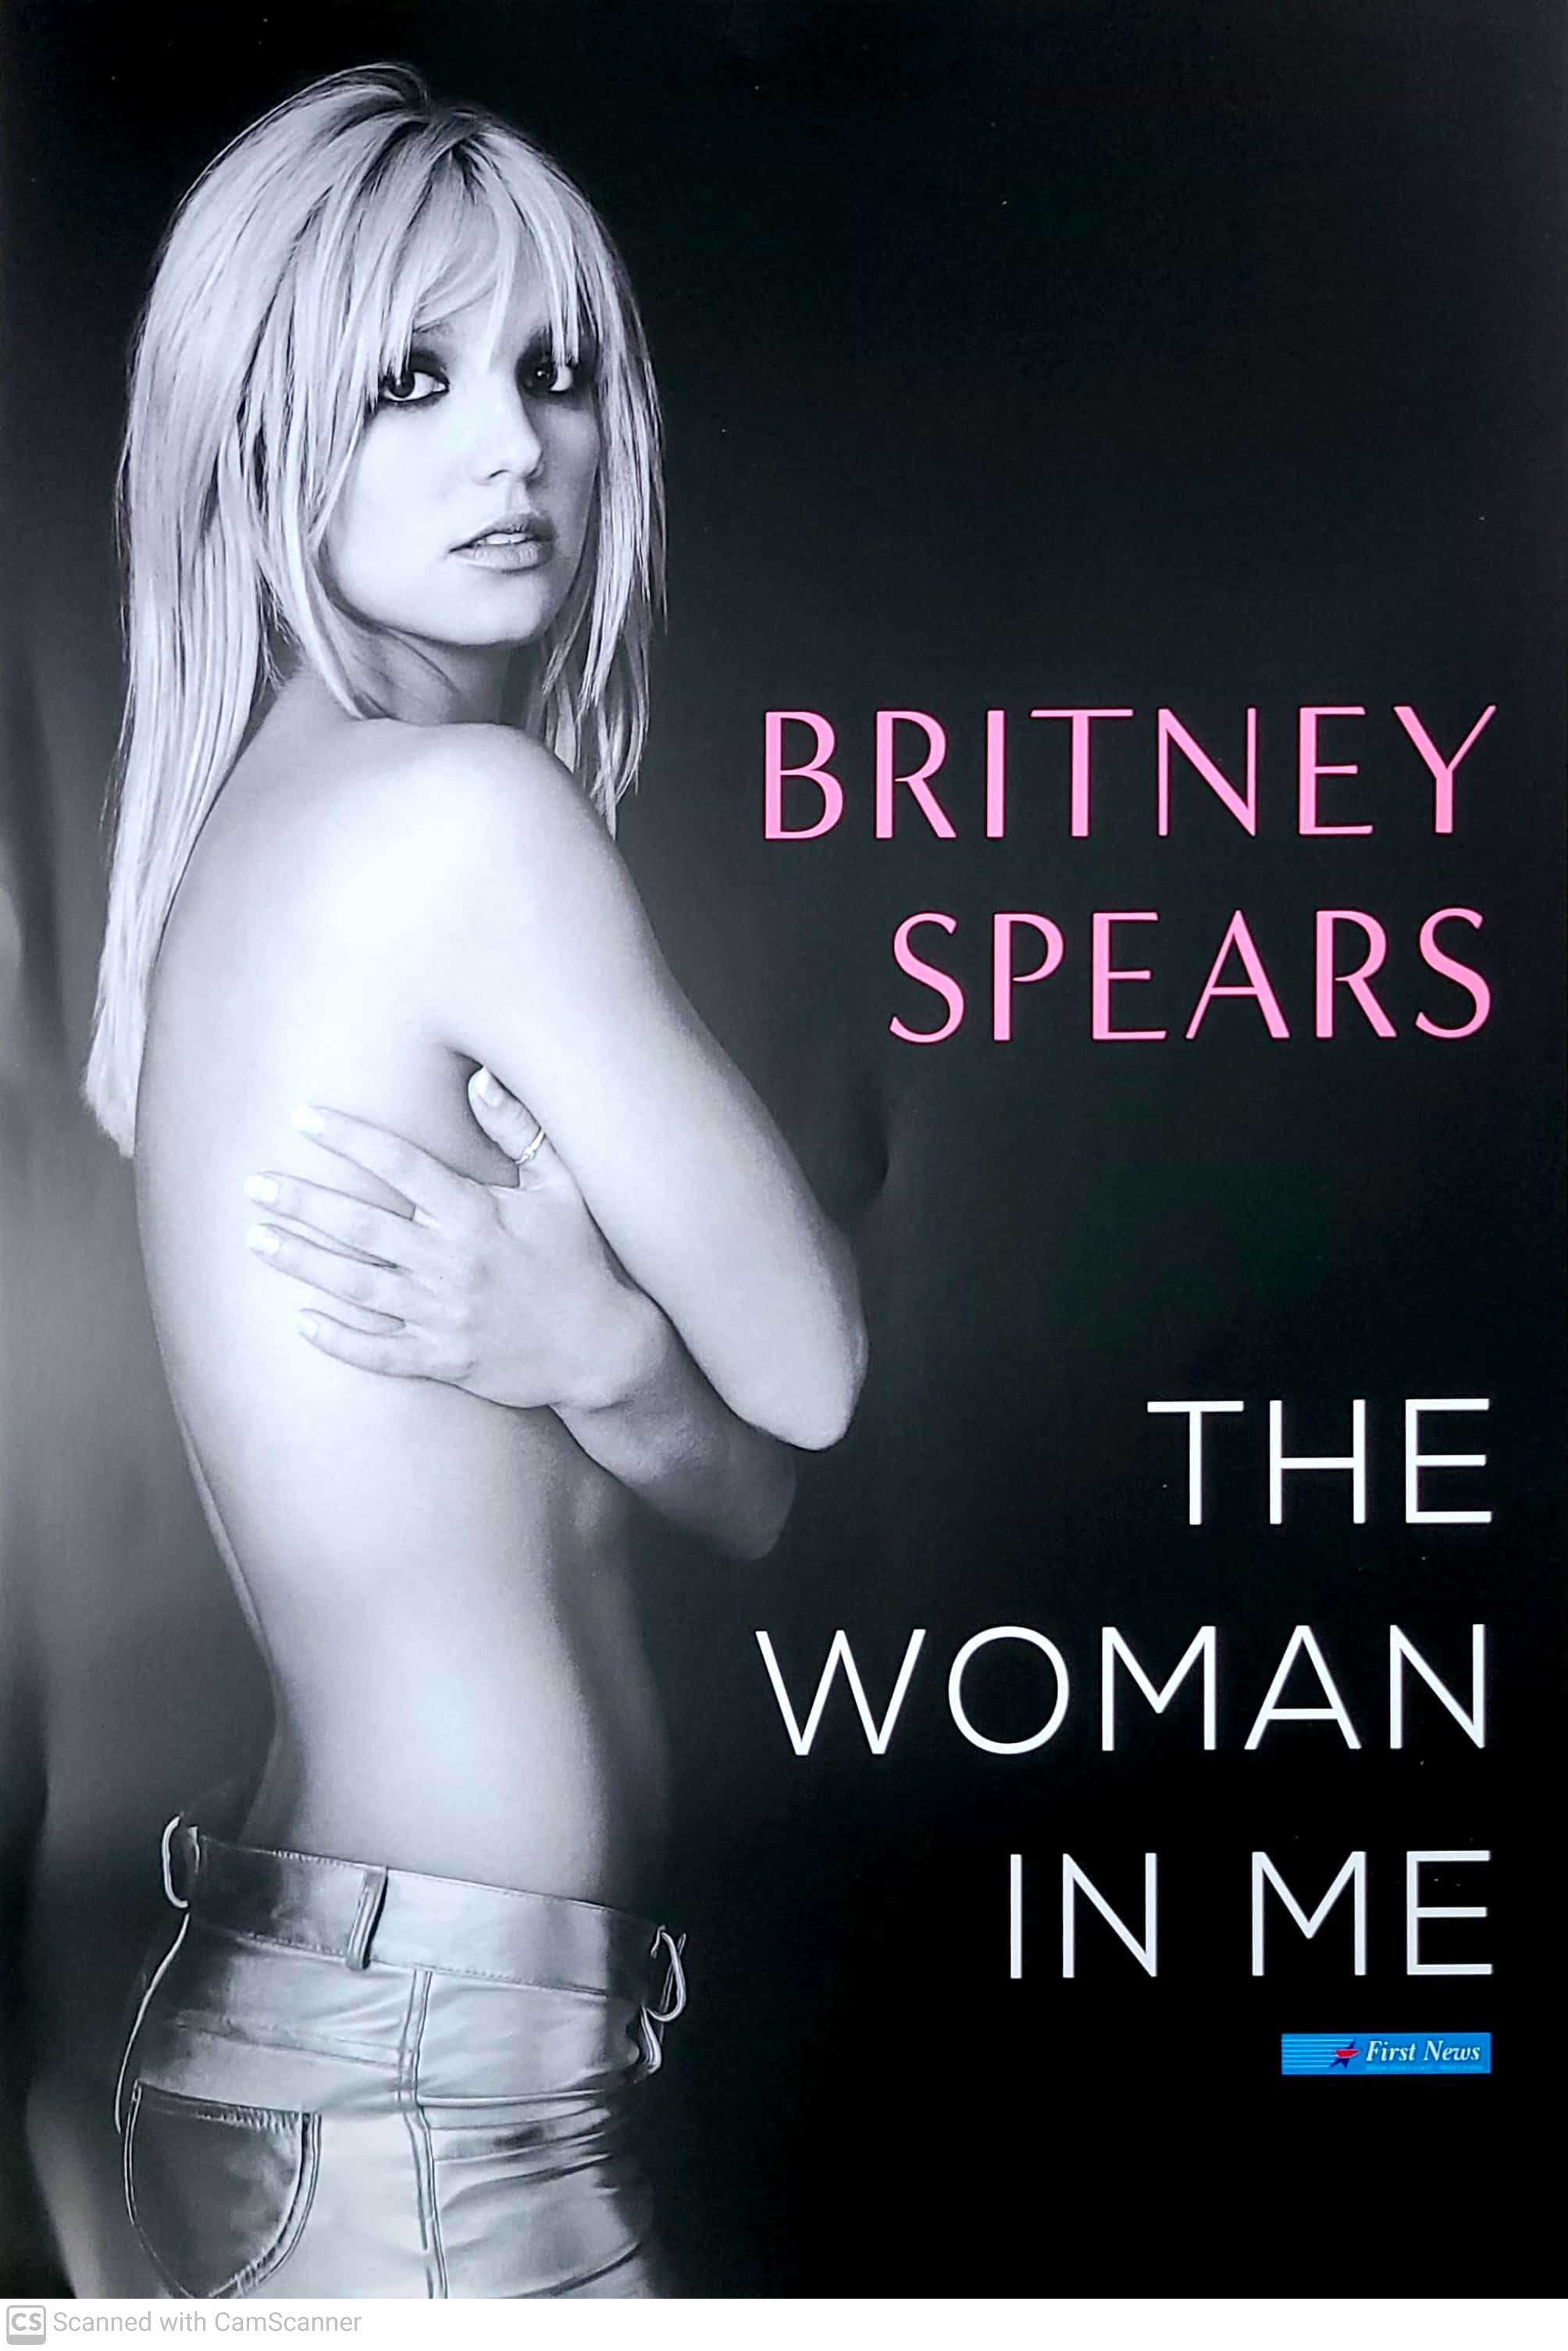 Sách - Người Đàn Bà Trong Tôi - The Woman in Me ( tặng kèm Poster ca sĩ Britney Spears - SL có hạn )